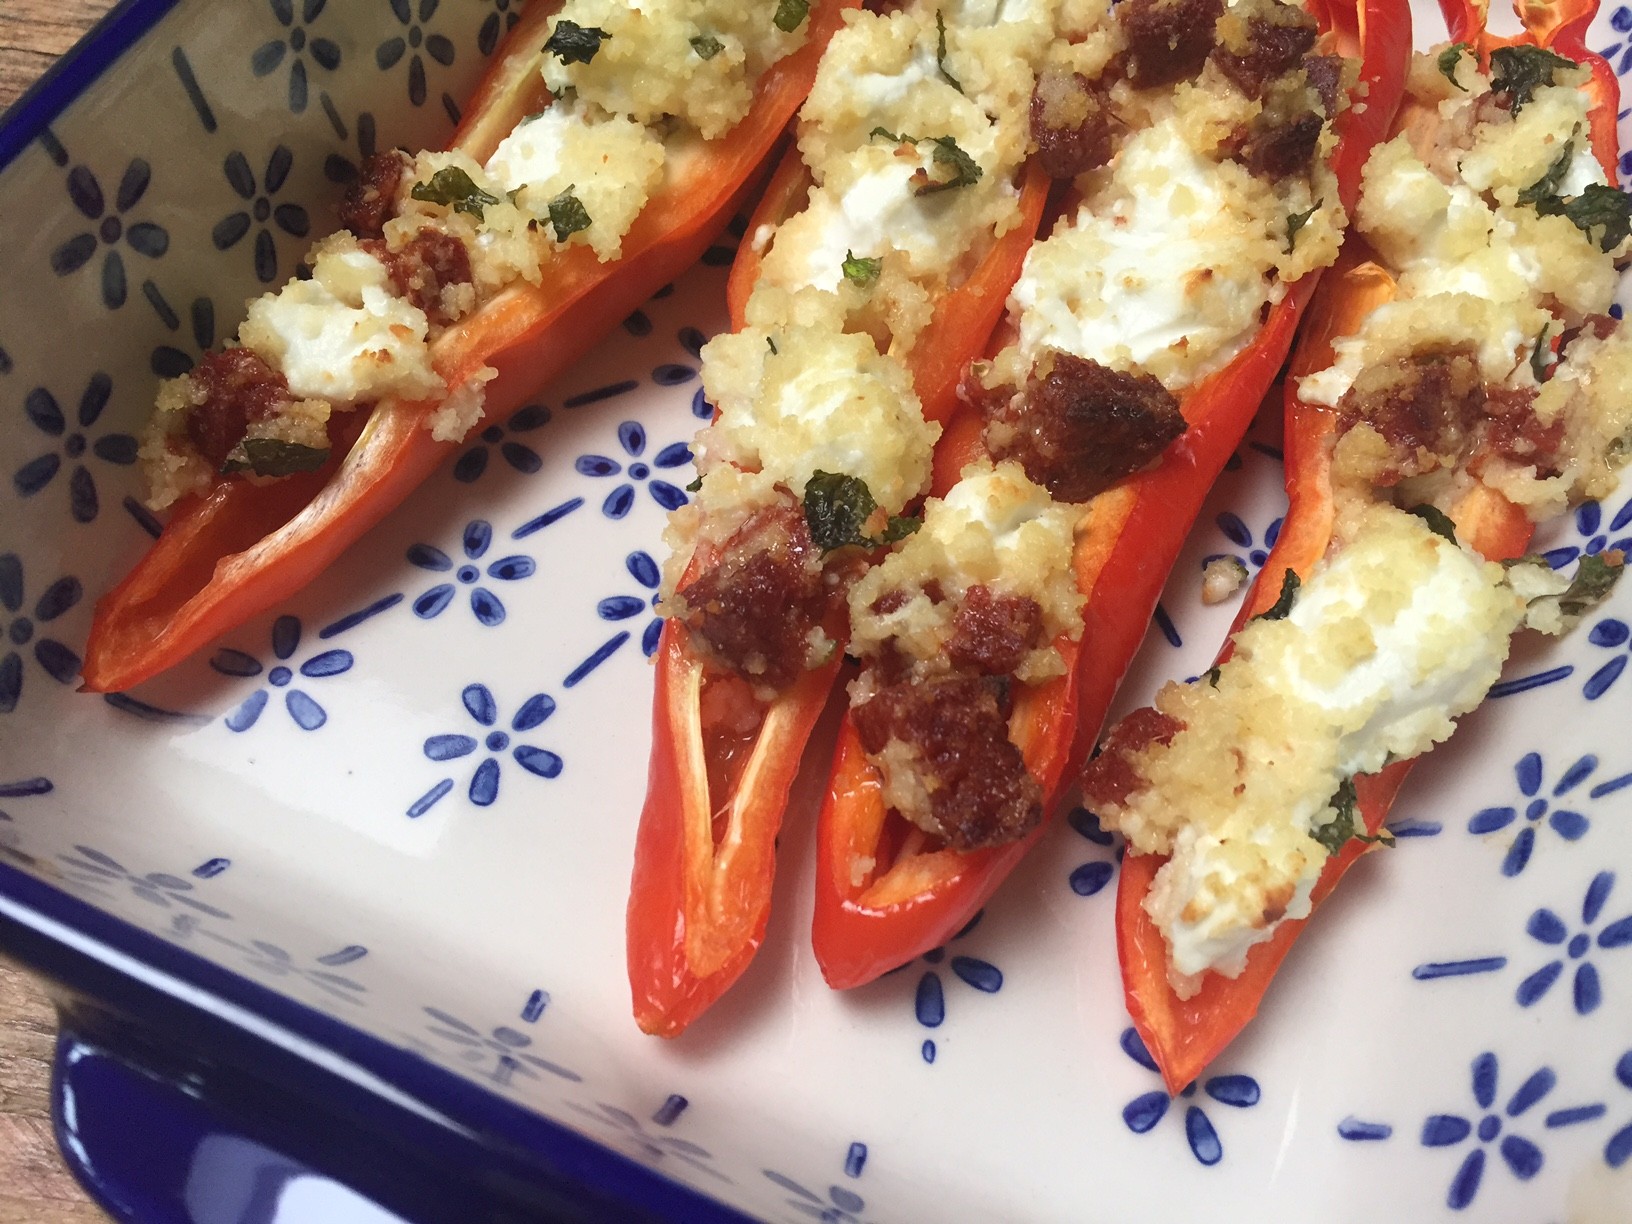 Gevulde paprika met chorizo en geitenkaas recept van foodblog Foodinista